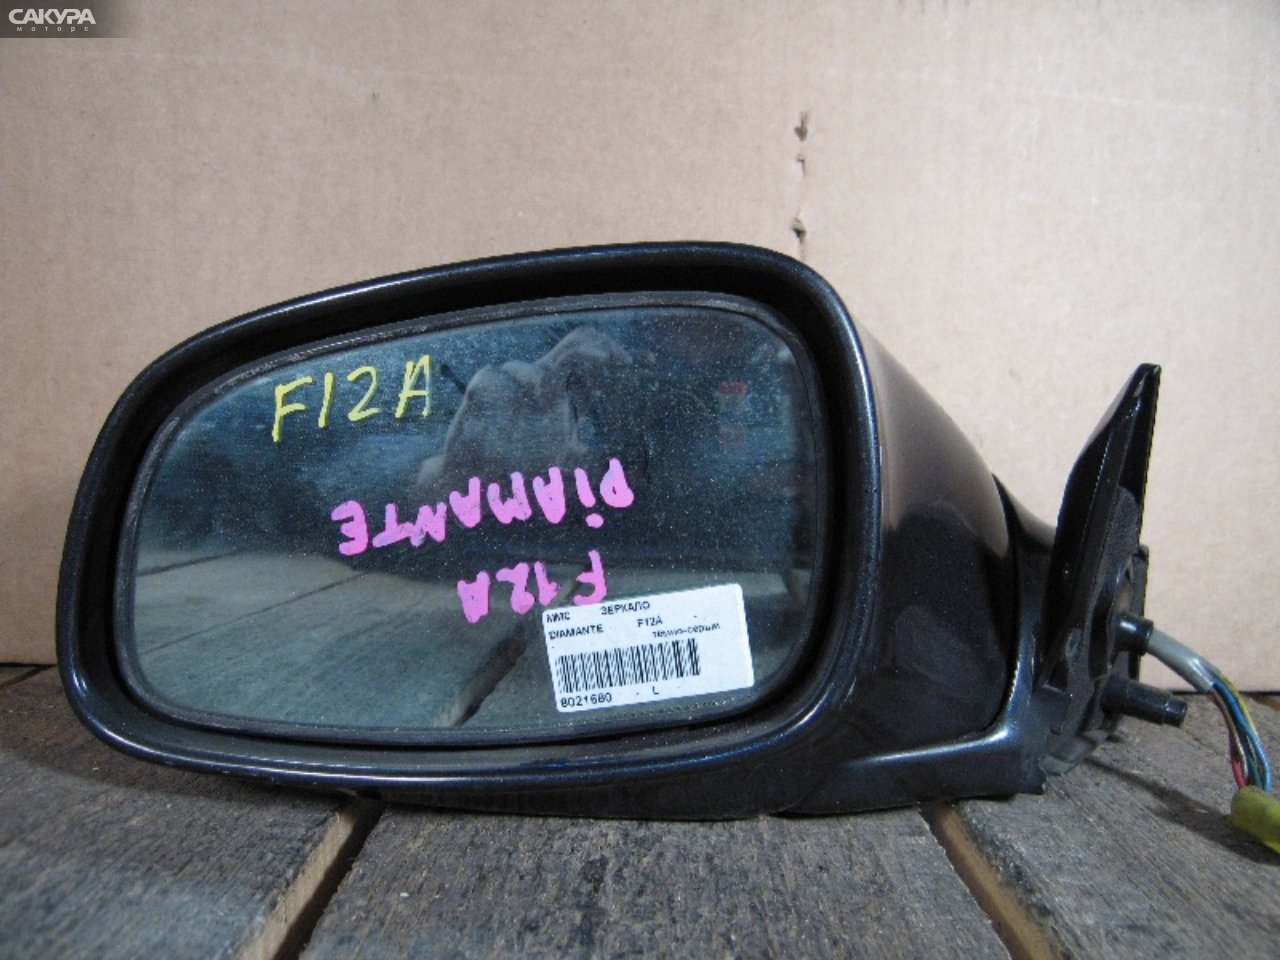 Зеркало боковое левое Mitsubishi Diamante F12A: купить в Сакура Абакан.